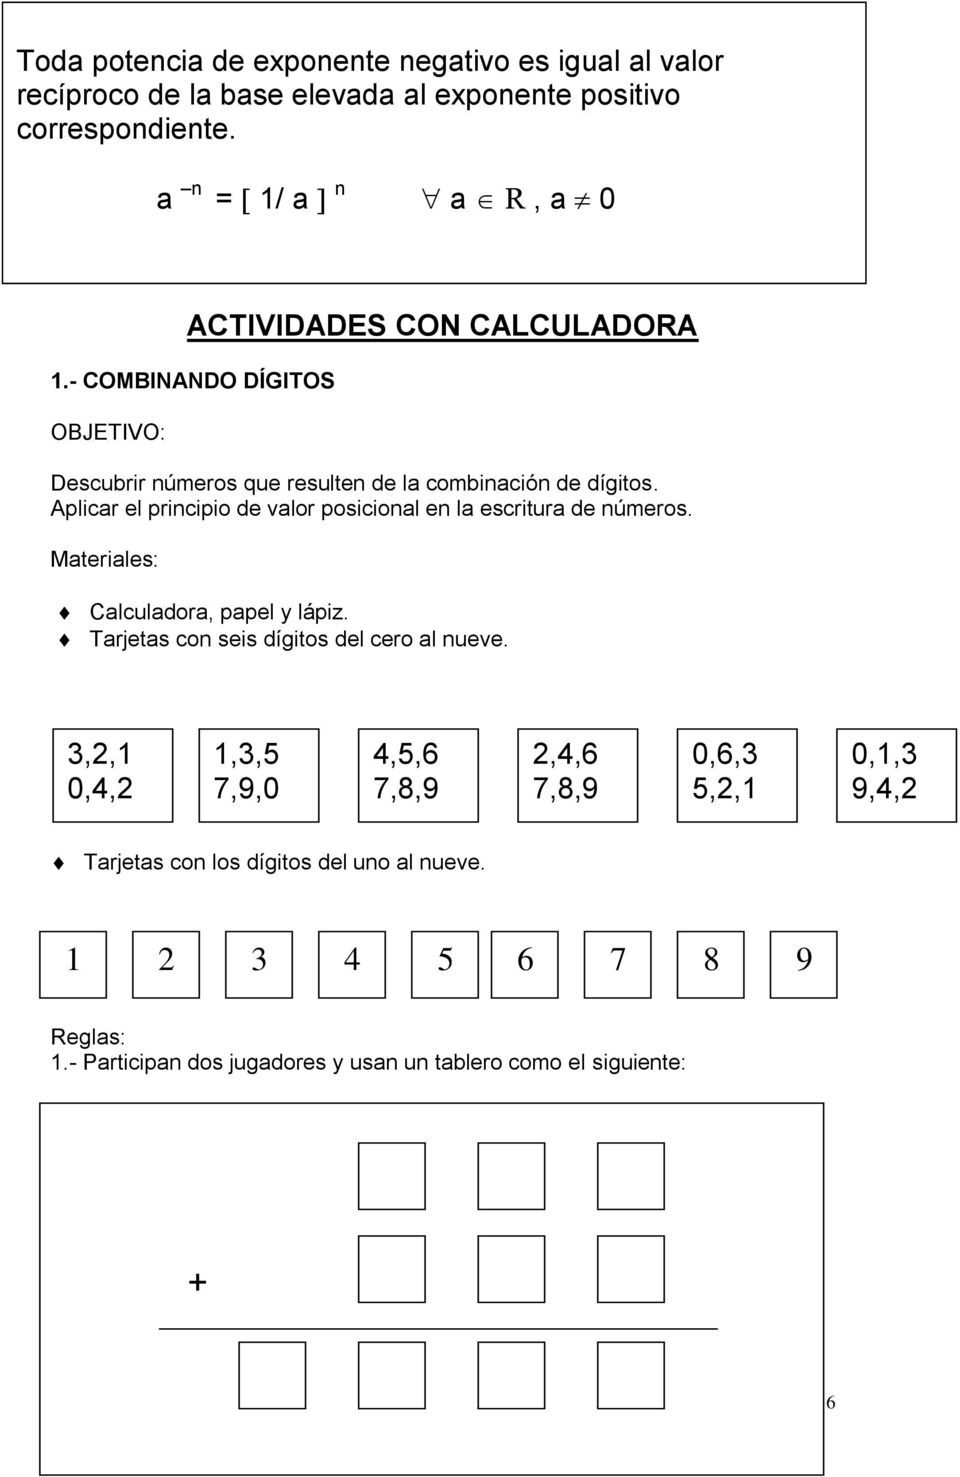 Aplicar el principio de valor posicional en la escritura de números. Materiales: Calculadora, papel y lápiz. Tarjetas con seis dígitos del cero al nueve.